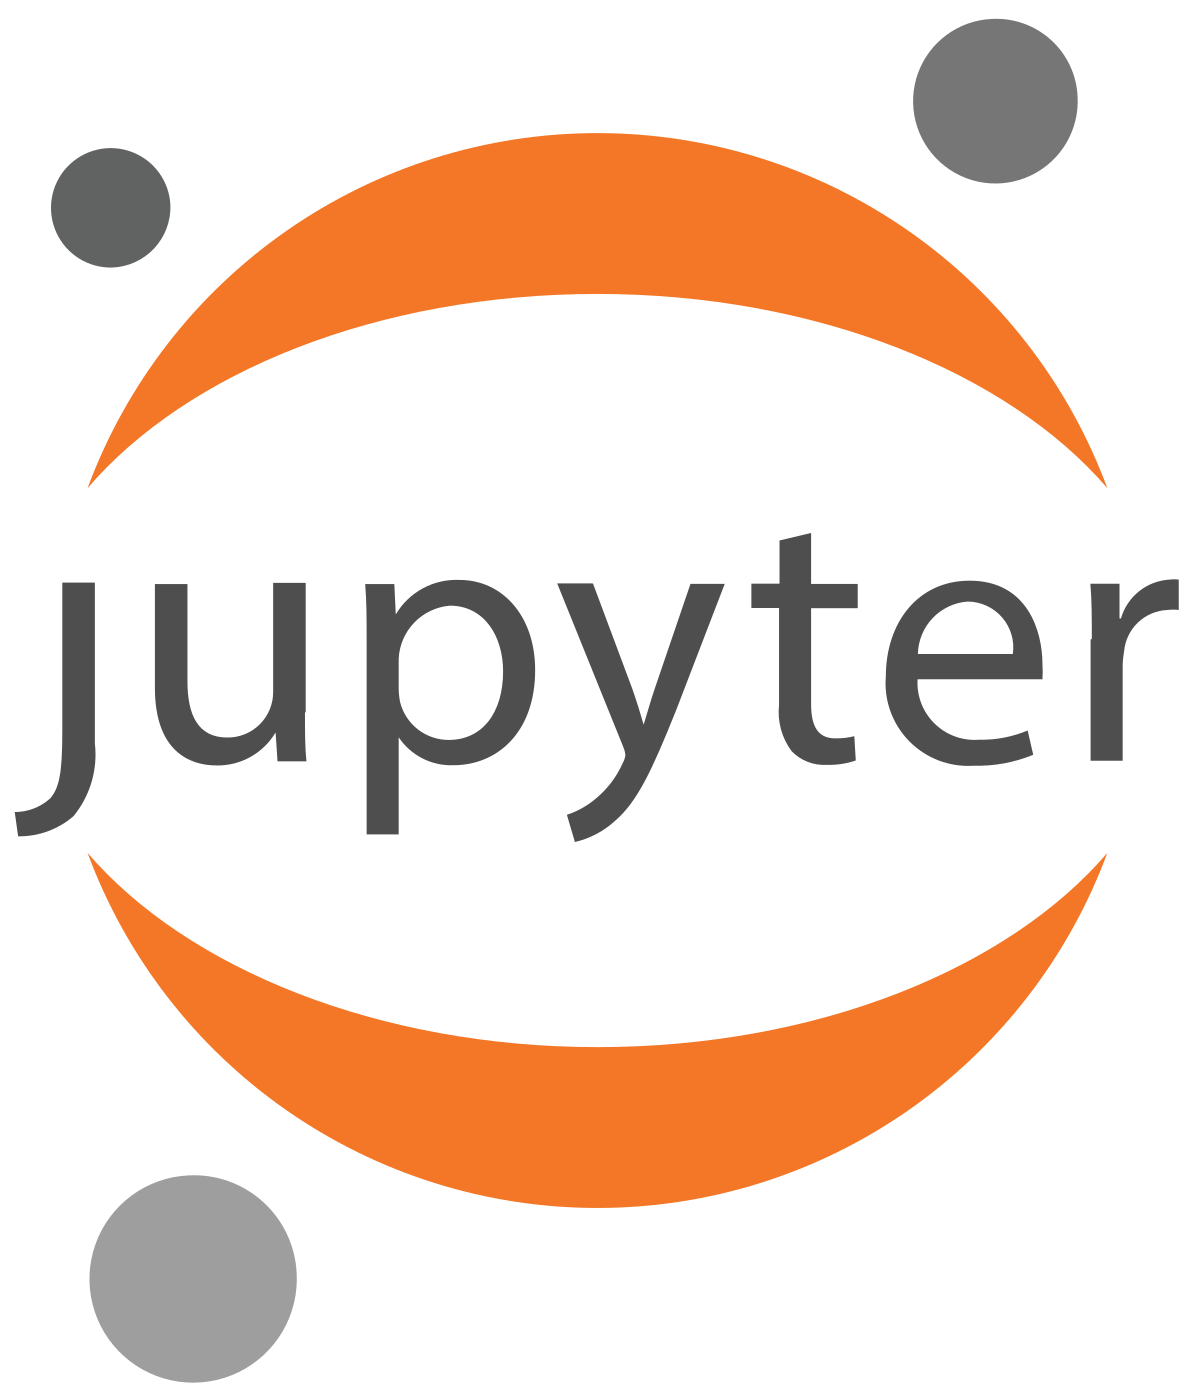 _static/jupyter_logo.png